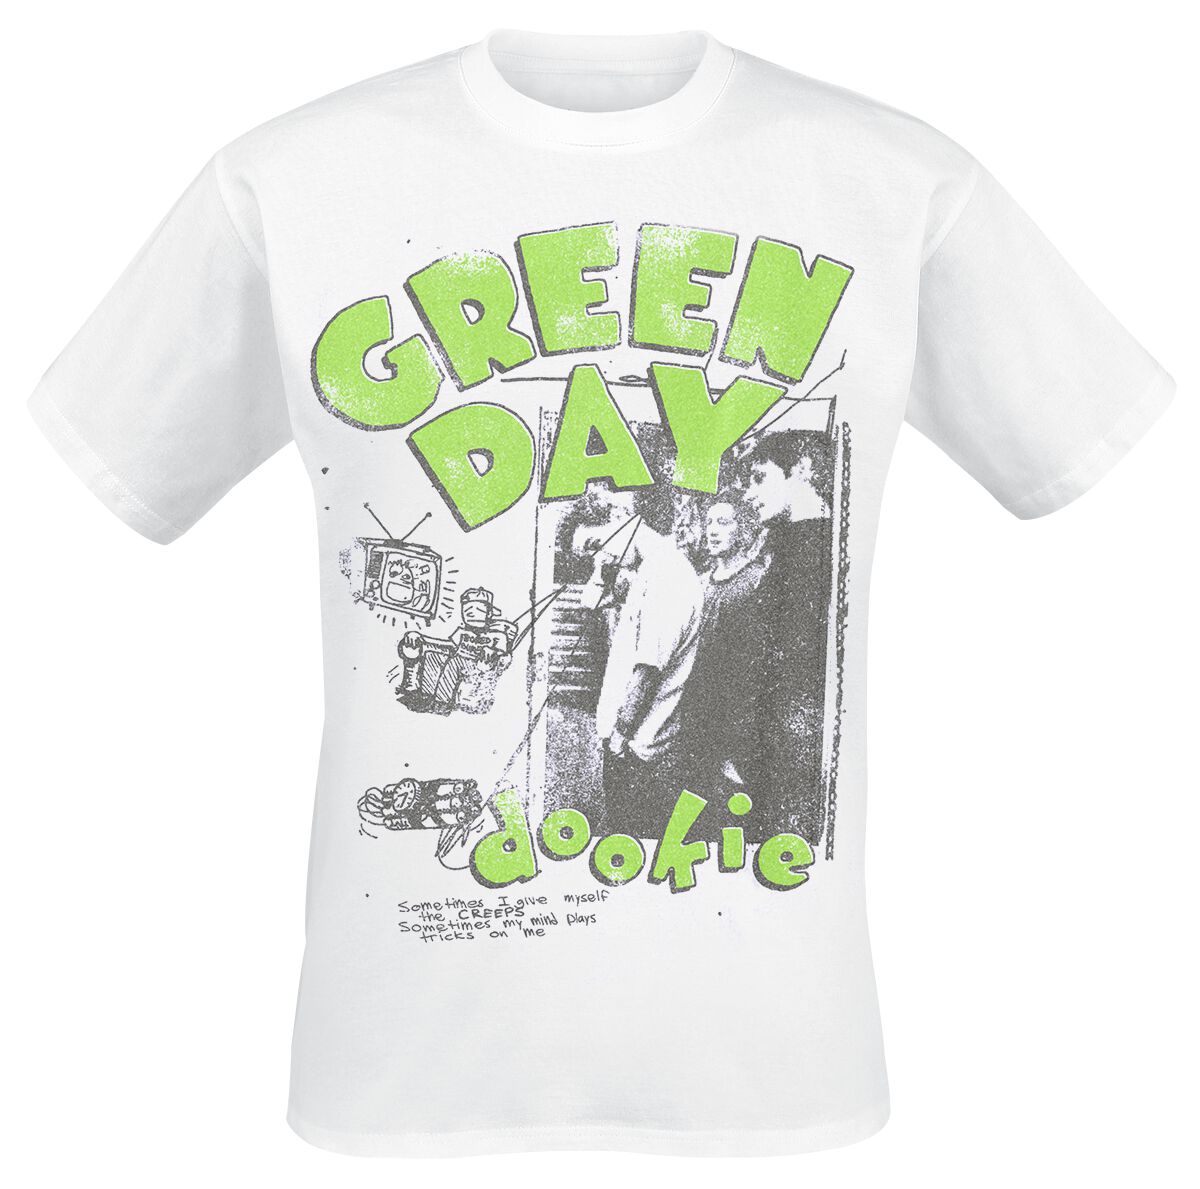 T-Shirt Manches courtes de Green Day - Basket Case Photo - S à XXL - pour Homme - blanc